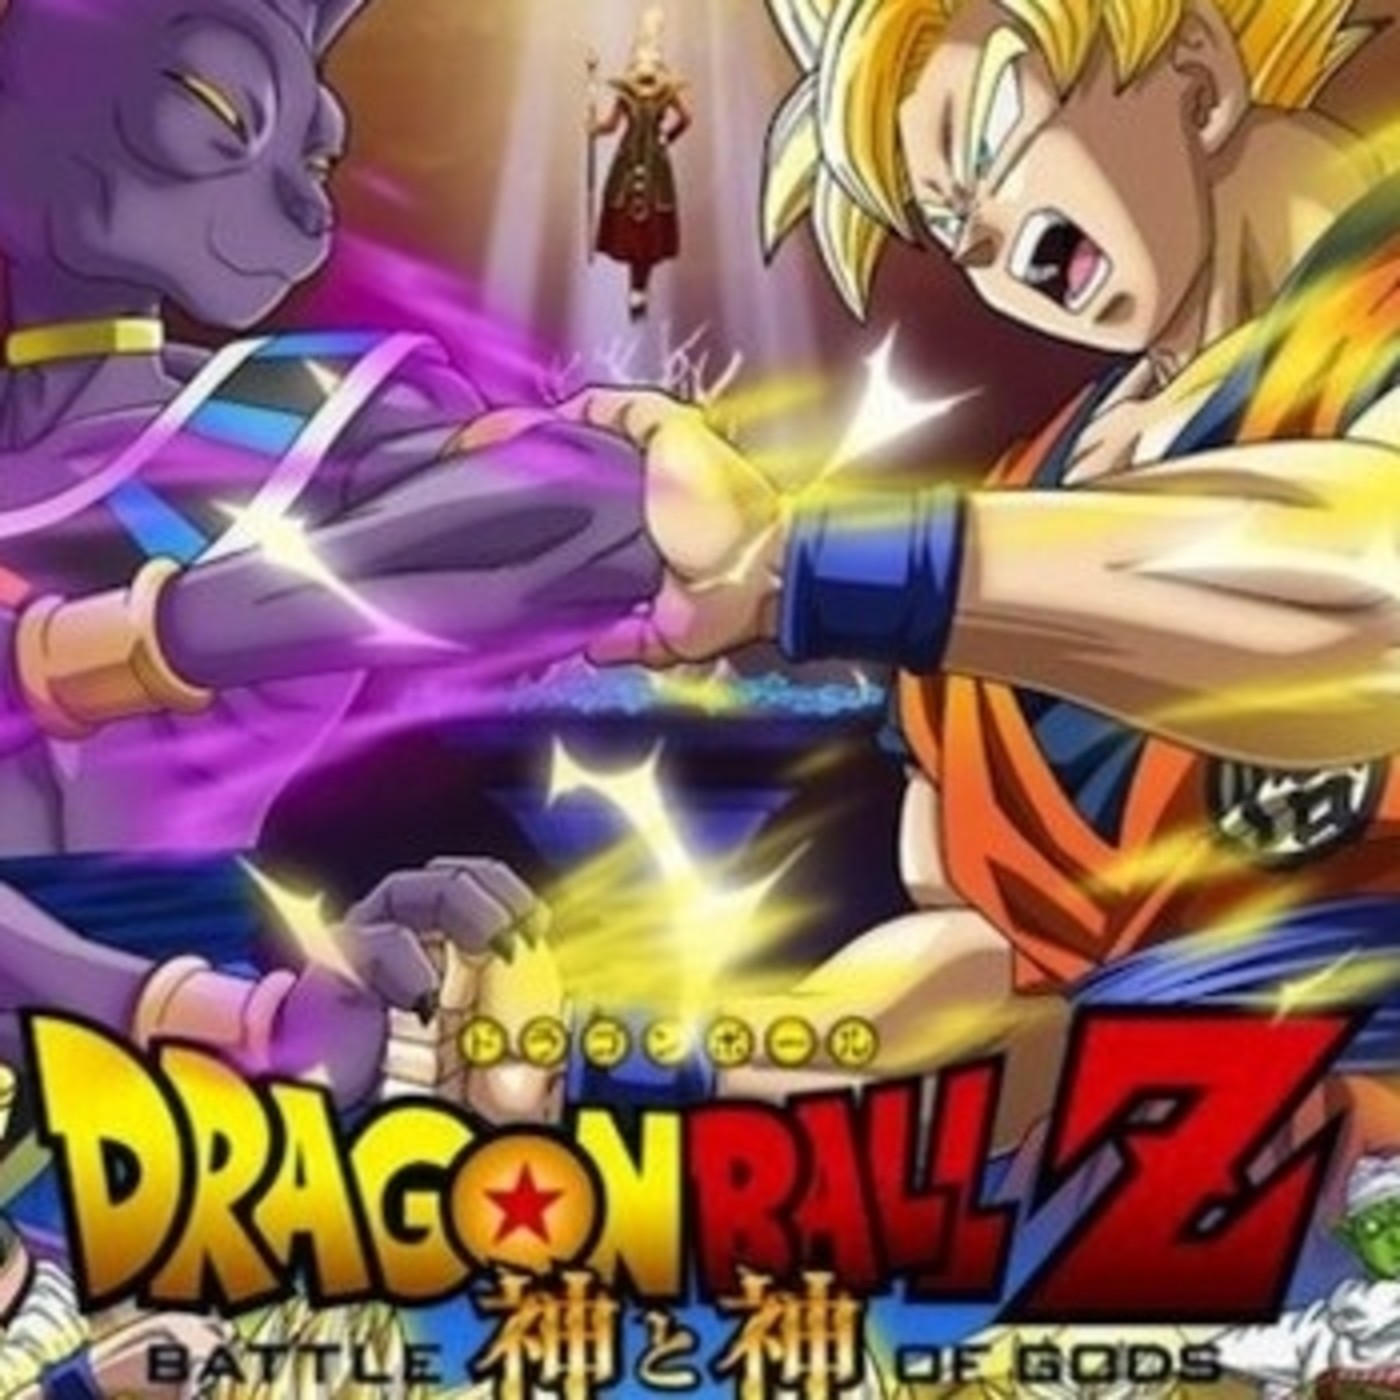 Gambatte Podcast | 'Dragon Ball Z: La Batalla de los Dioses' en Boing